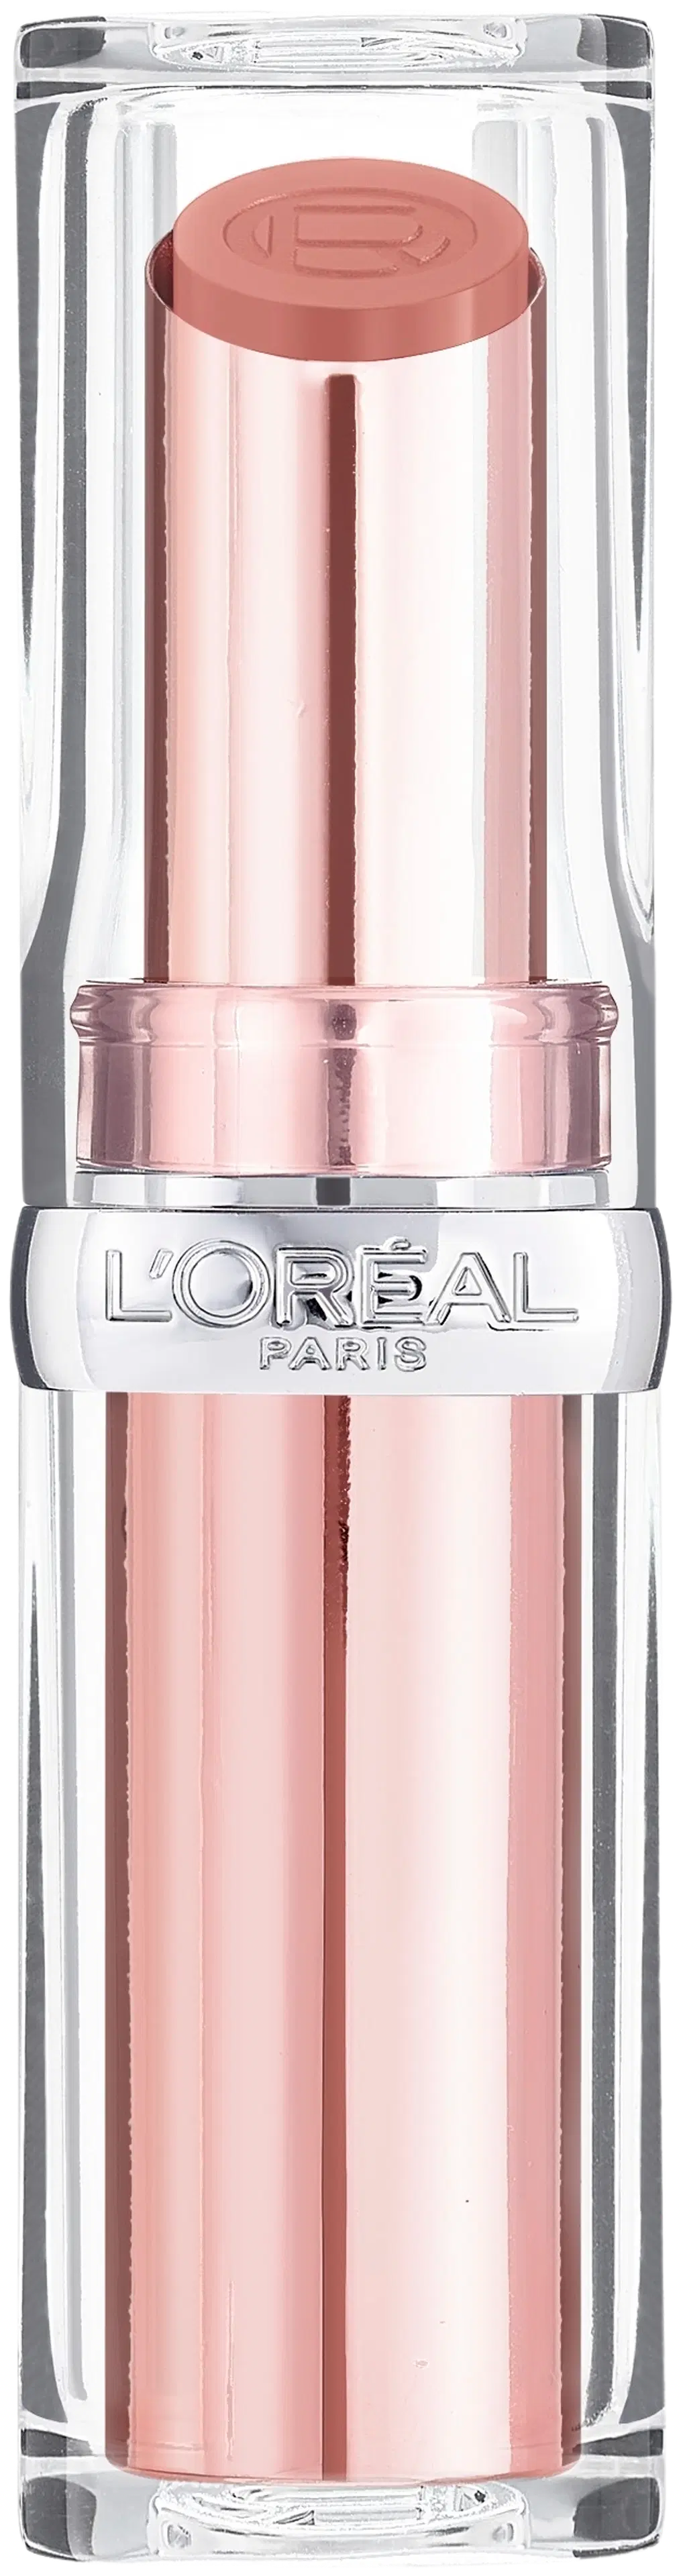 L'Oréal Paris L'Oréal Paris Glow Paradise Balm-in-Lipstick 642 Beige Eden huulipuna 4,8g